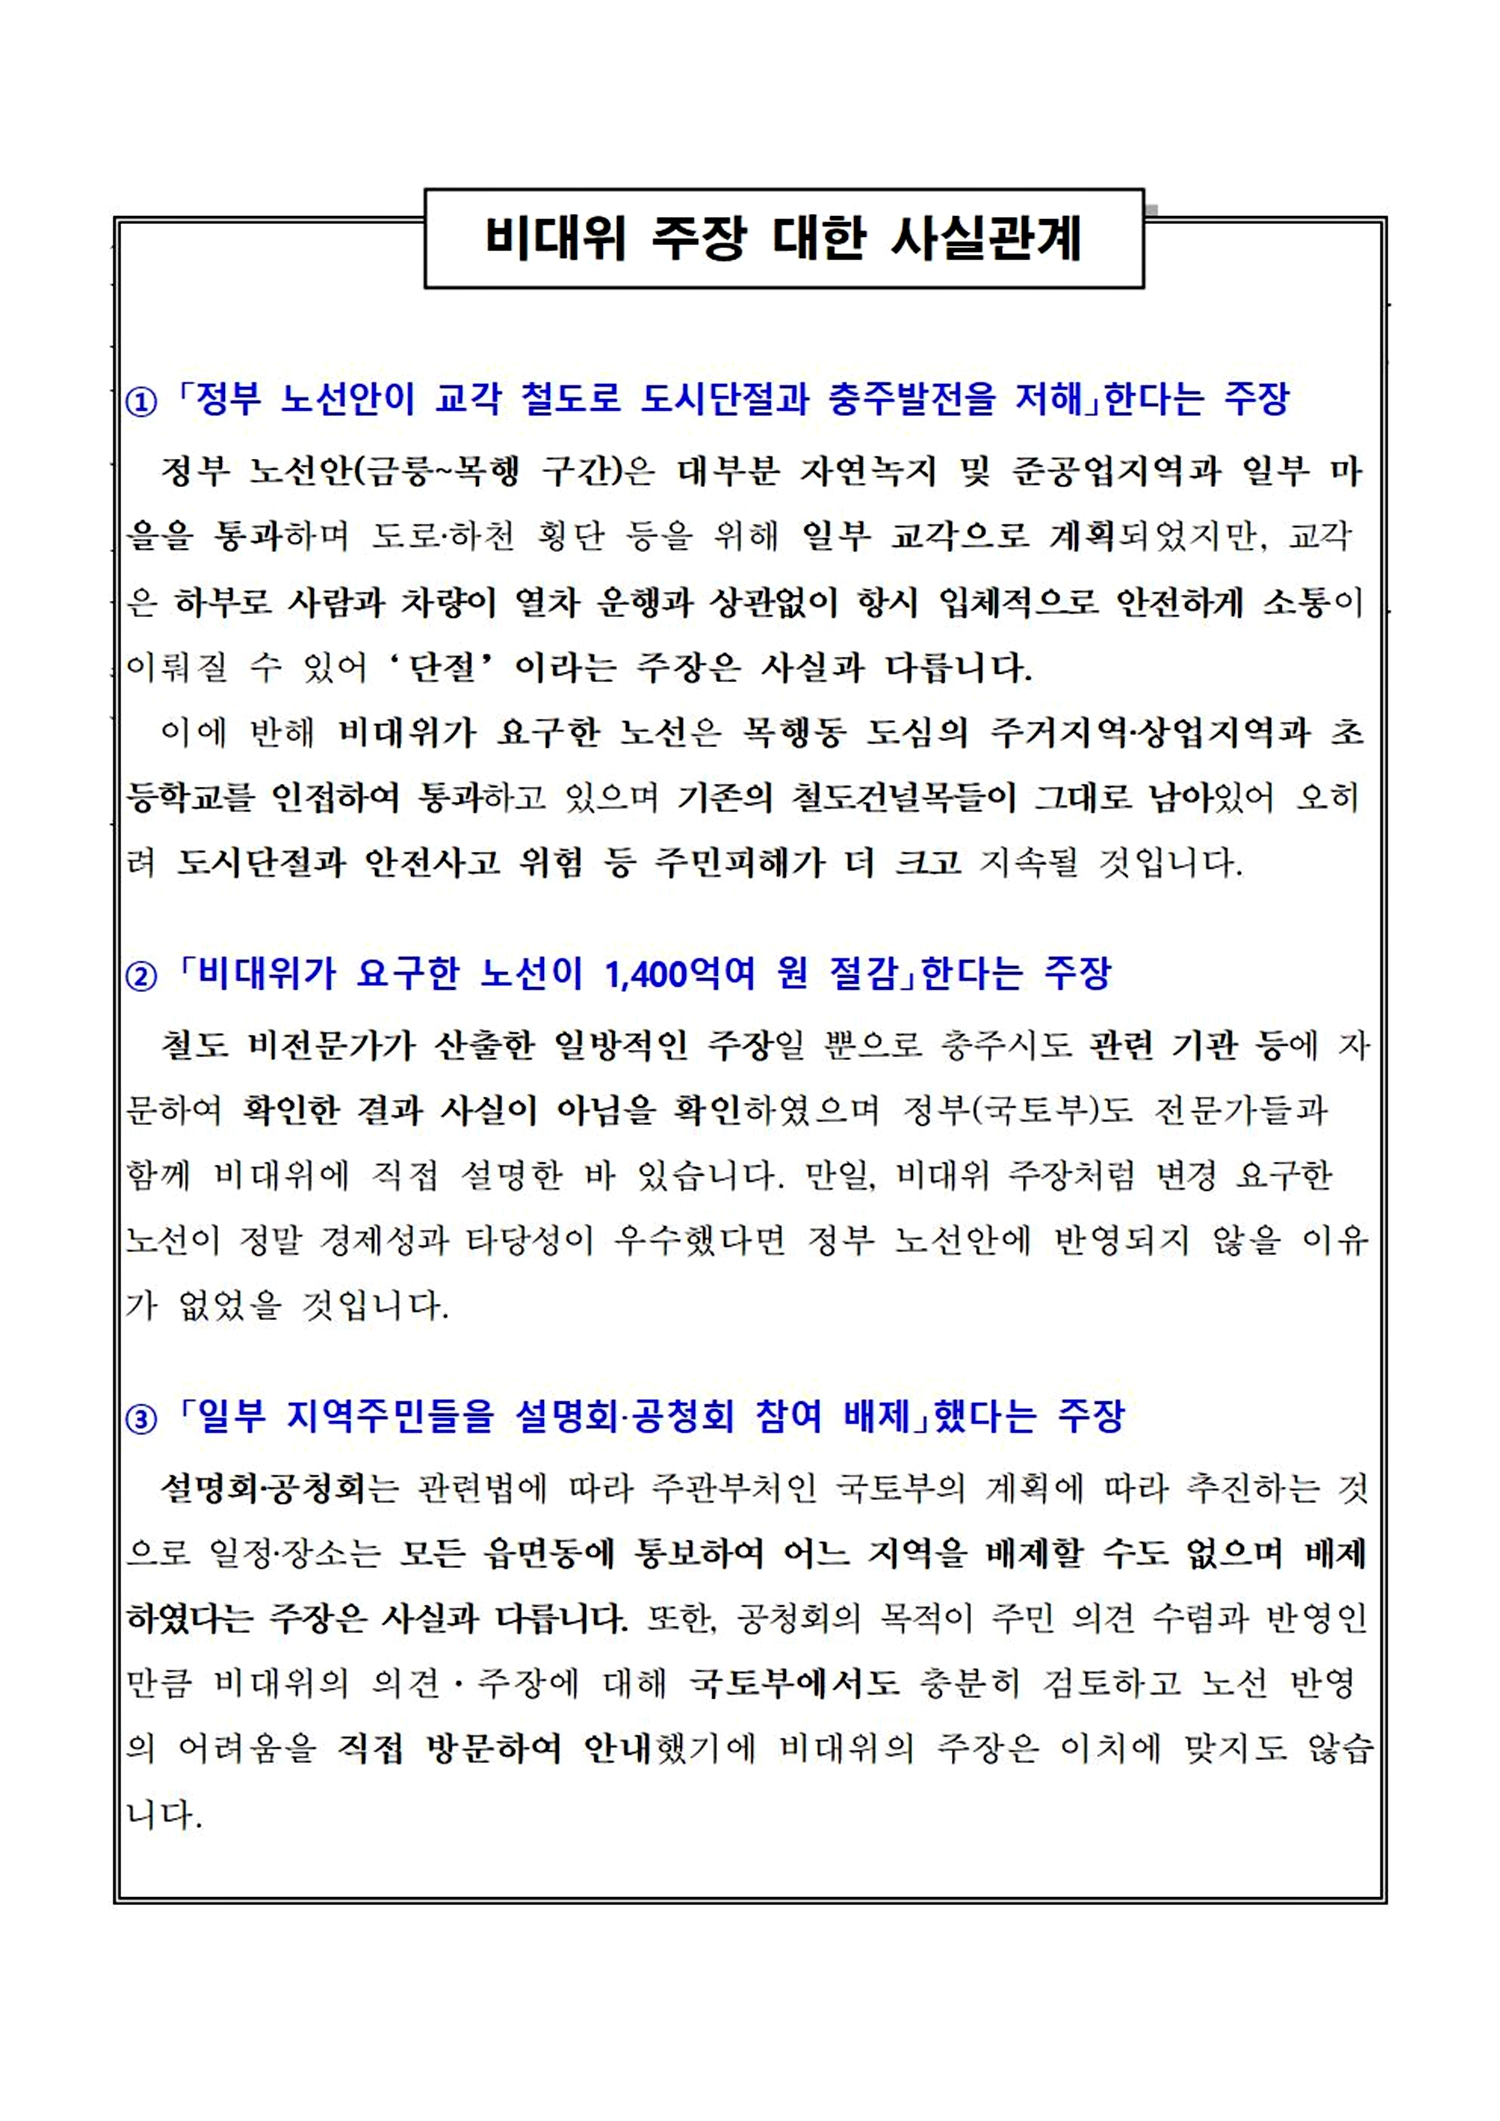 충주시, 충북선 고속화 비대위 관련 입장문 발표